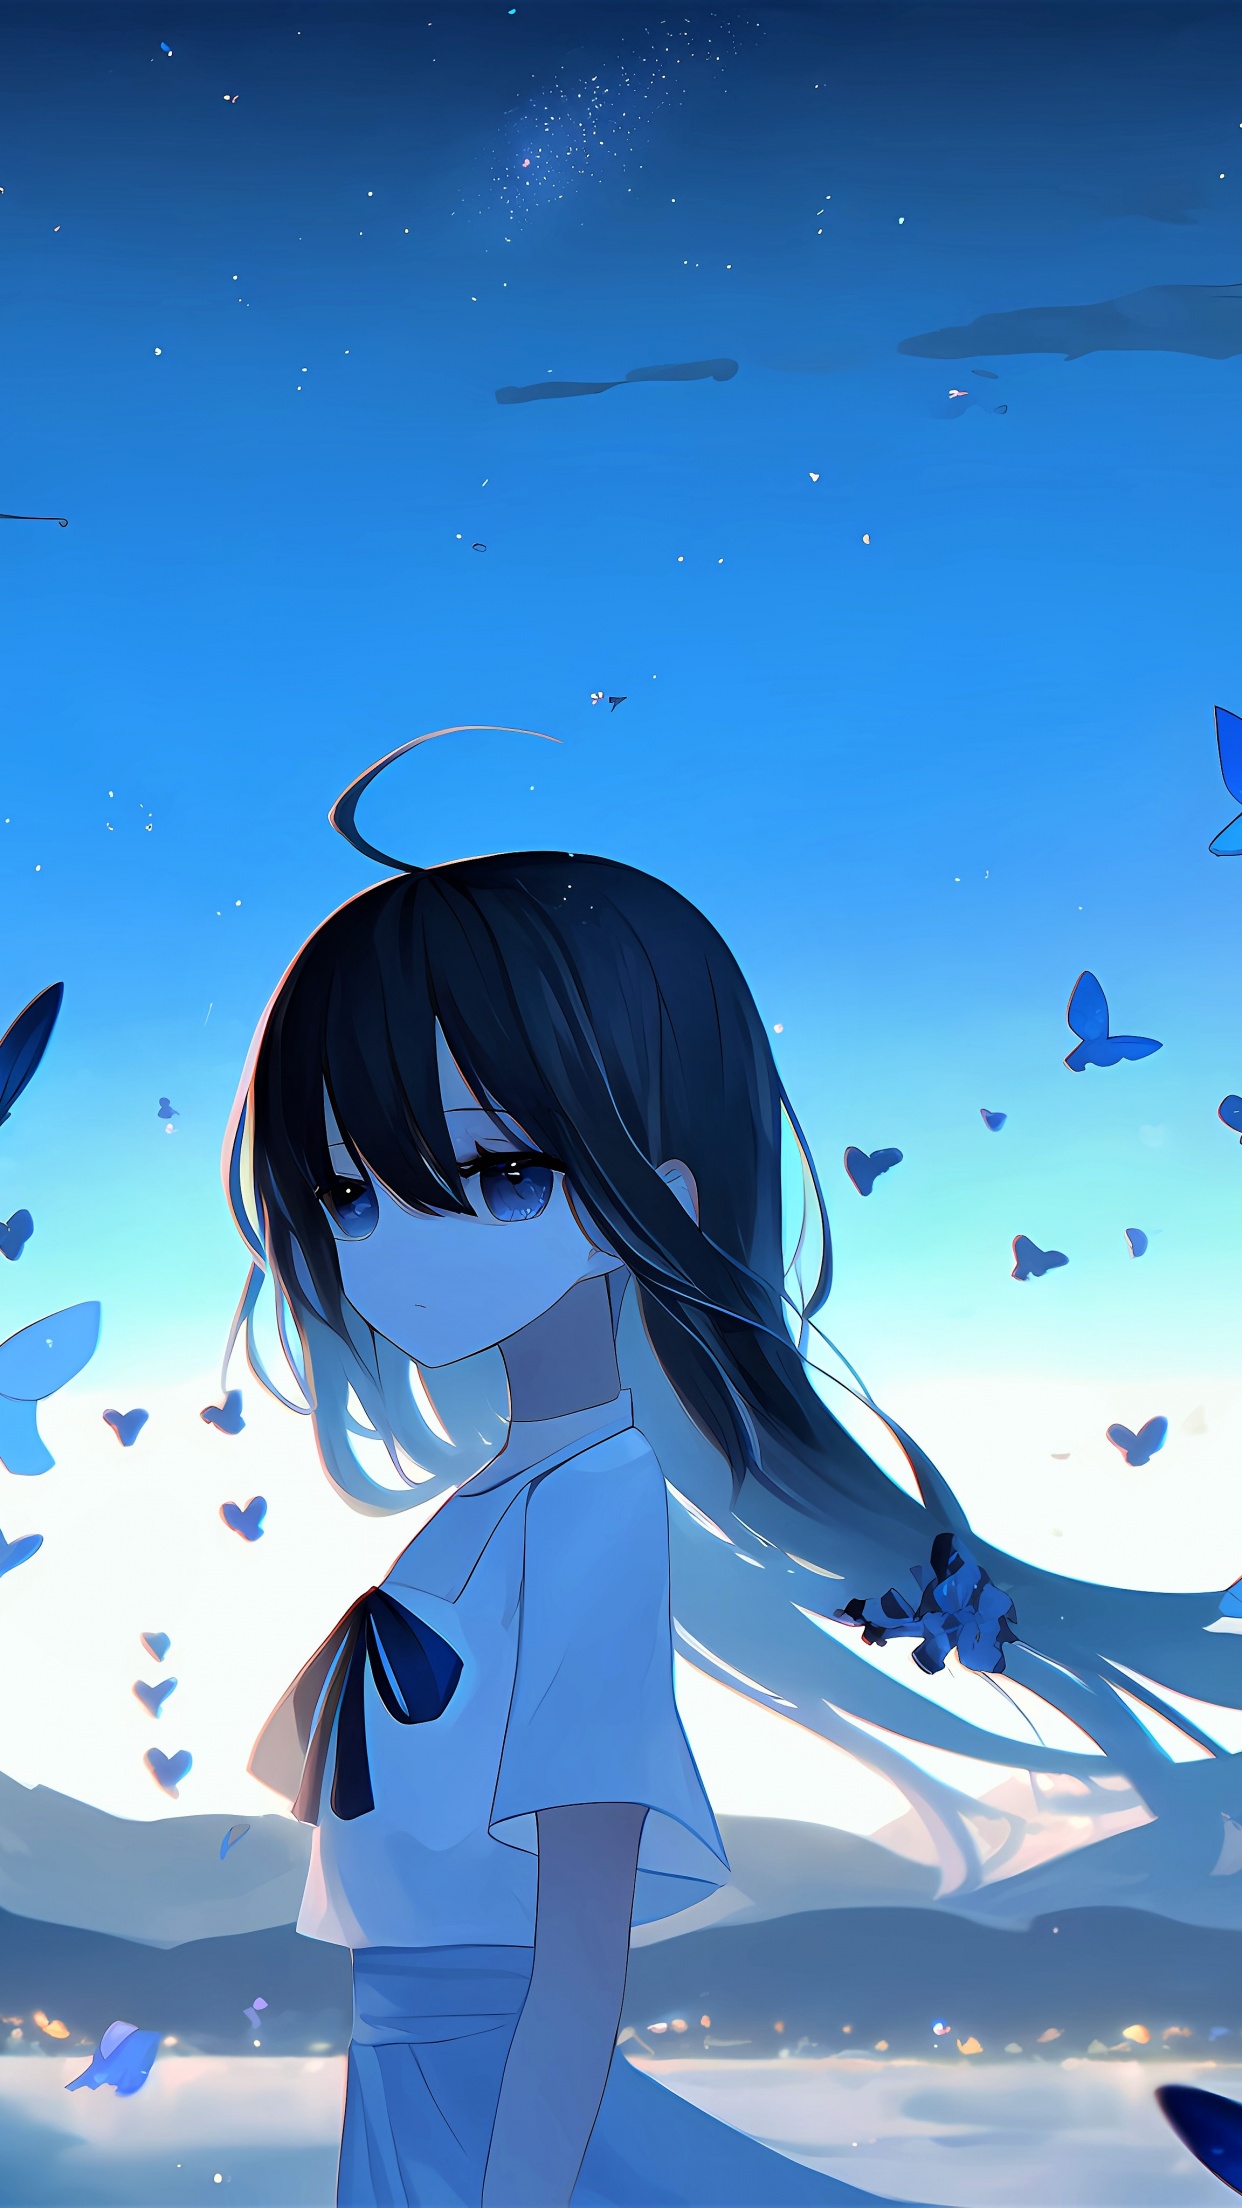 Sad Anime Girl Wallpaper Download  MobCup